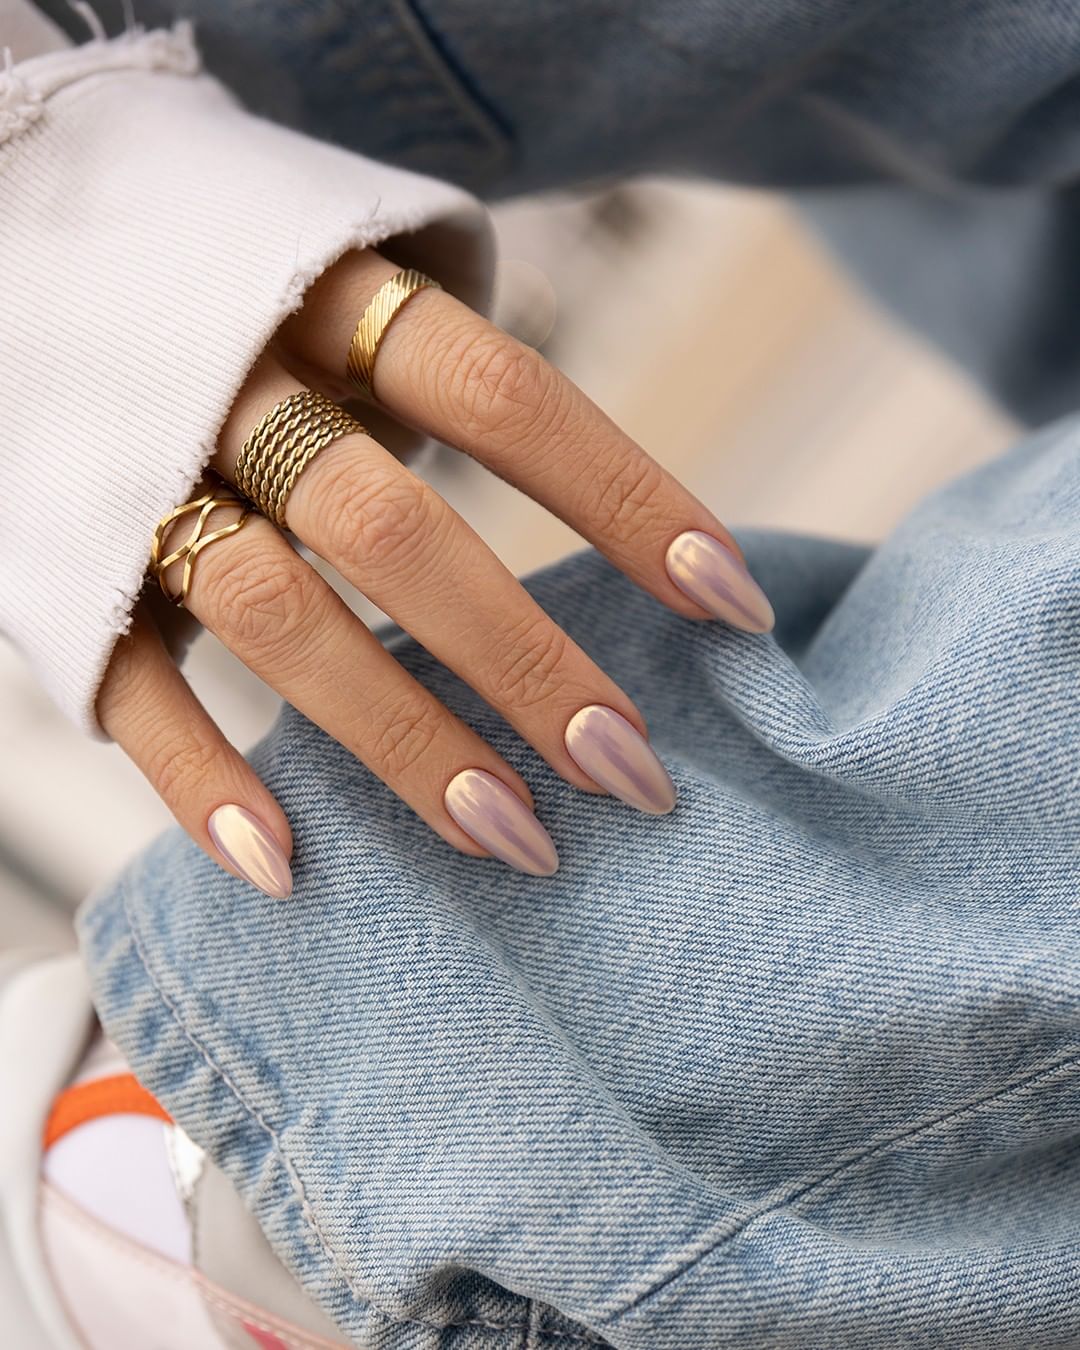 Cuál es la mejor lima para tus uñas?